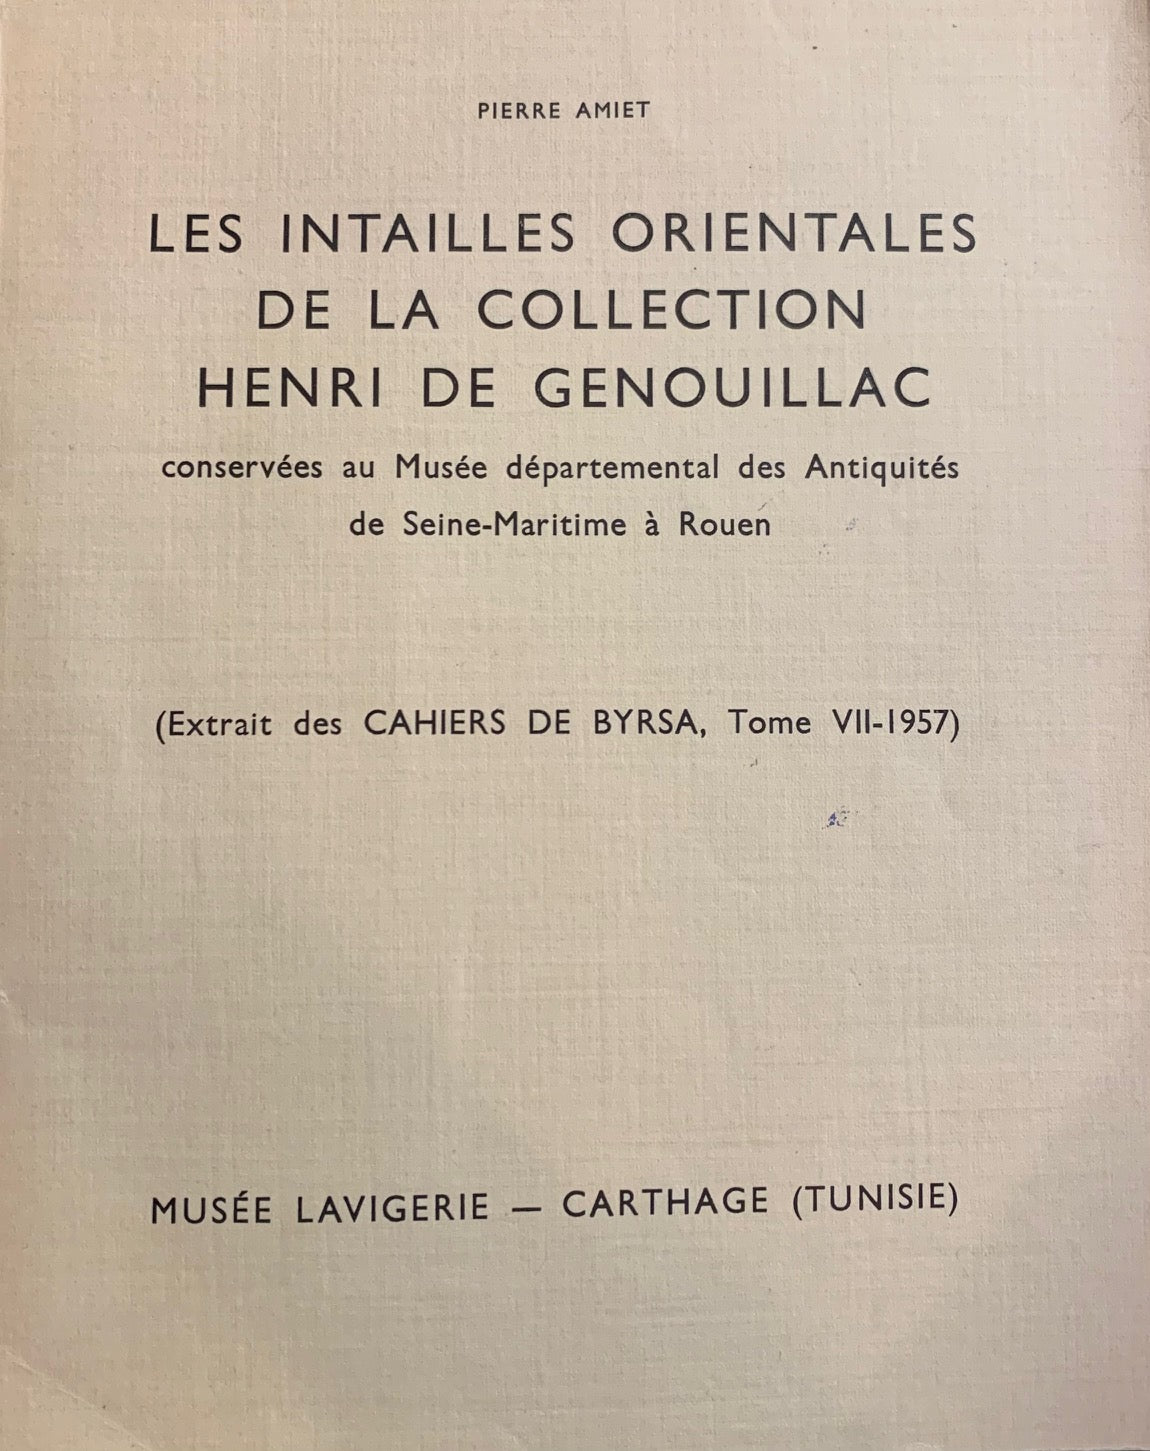 Les intailles orientales de la collection Henri de Genouillac.